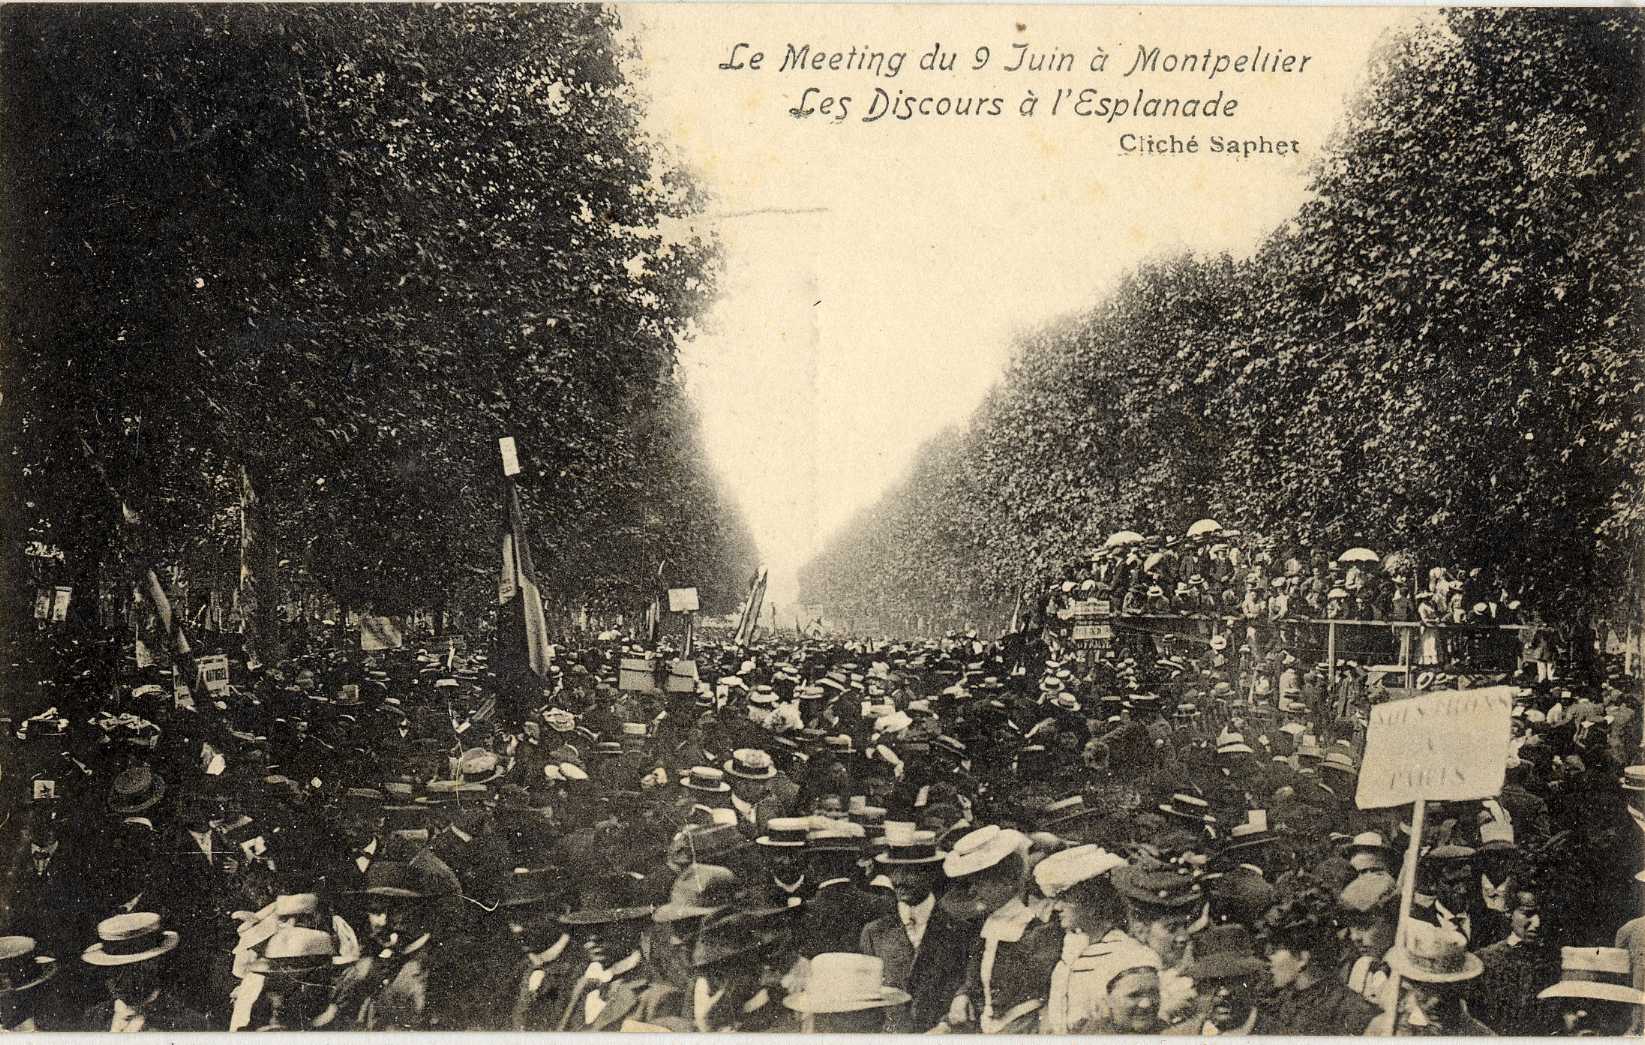 Le meeting du 9 juin à Montpellier. AMM, carte postale, 6Fi57